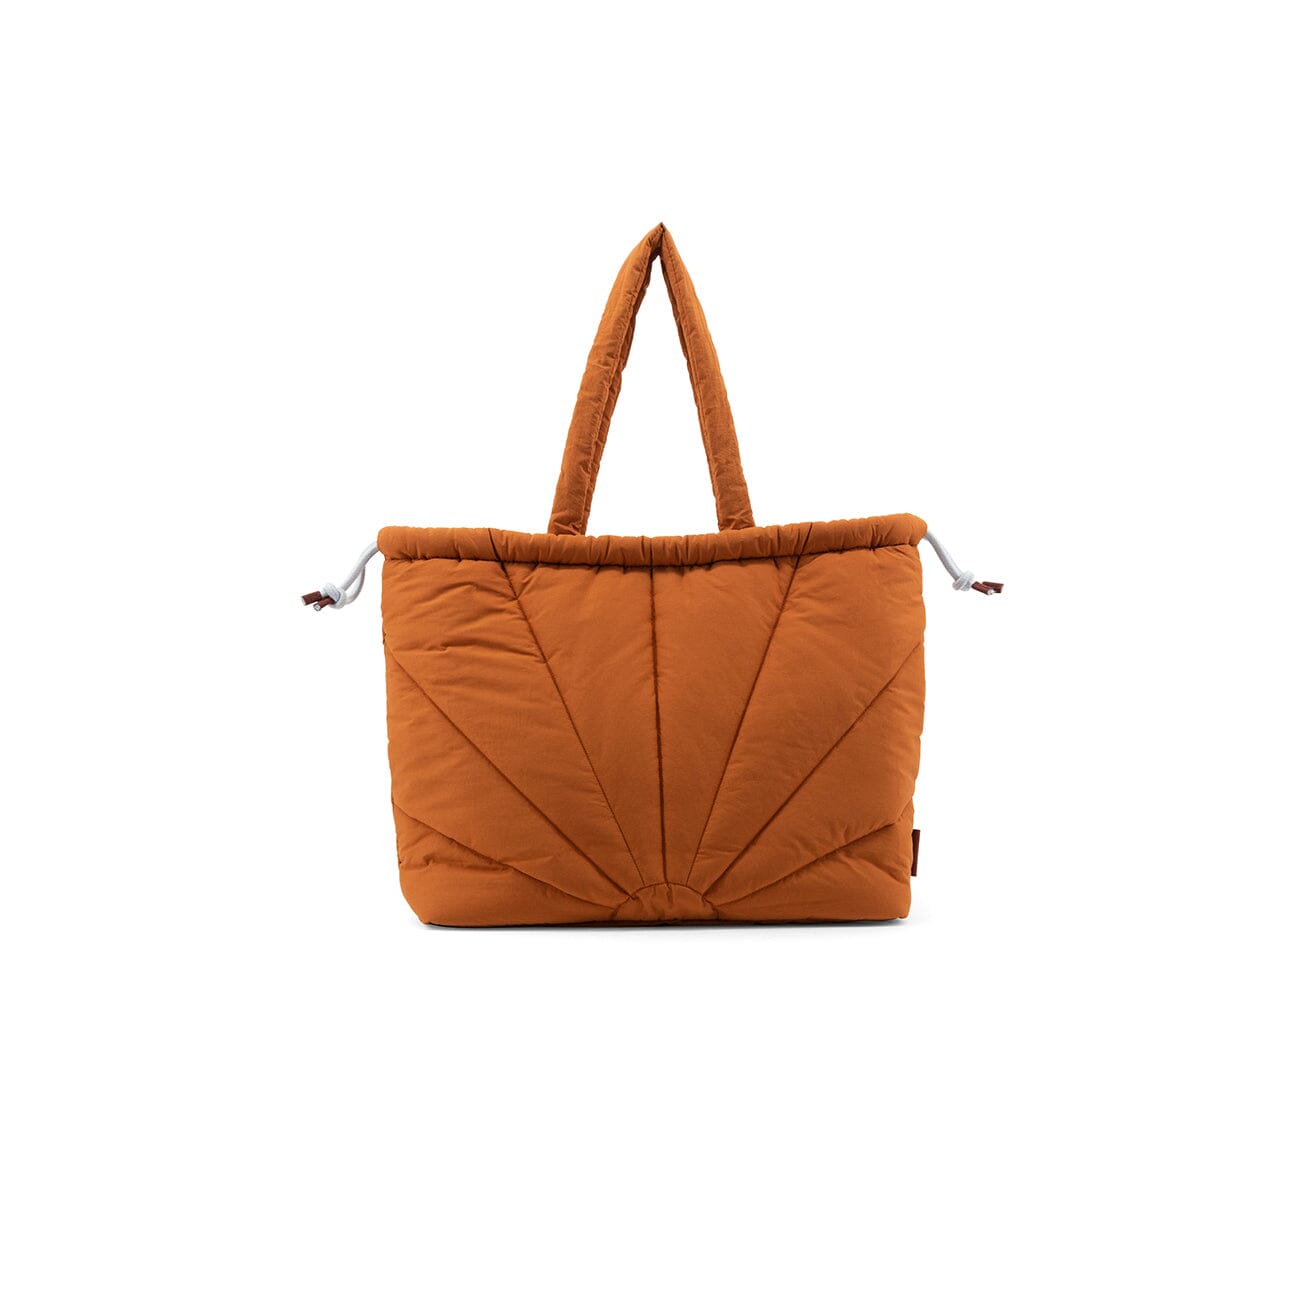 Tote Bag "Padded" Handtaschen, Geldbörsen & Etuis Sticky Sis Club croissant brown 